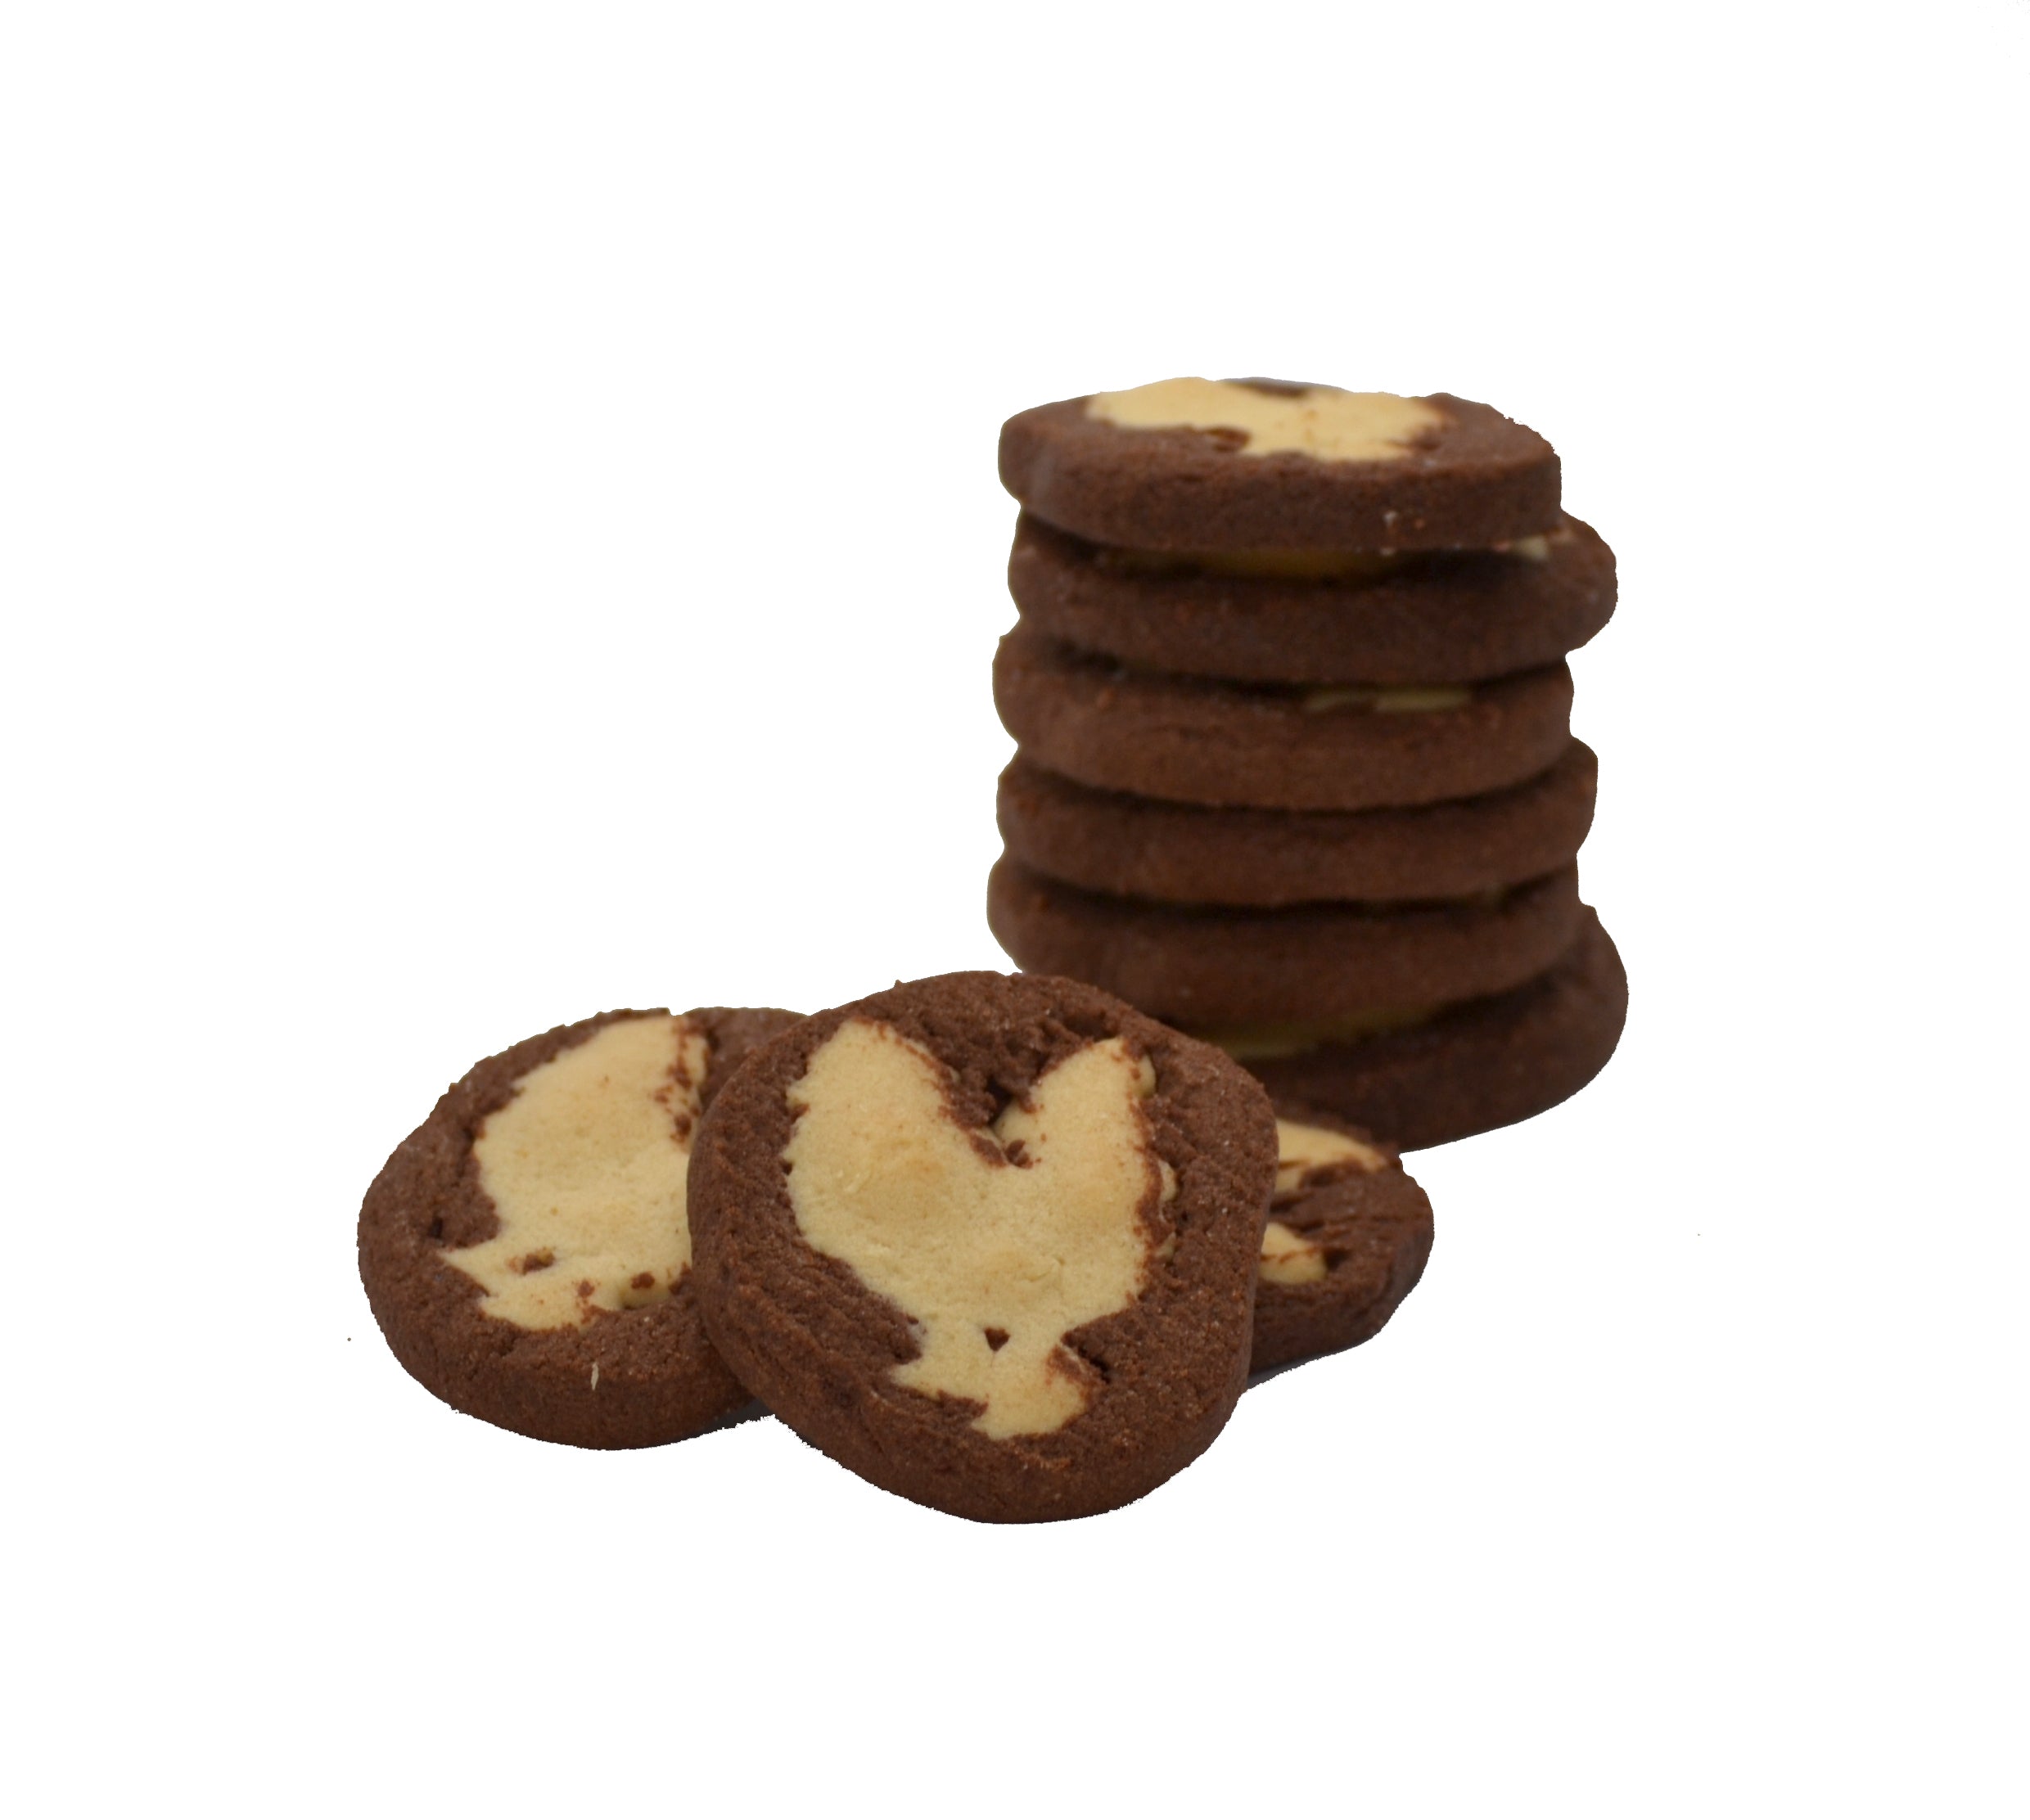 Kauai Kookie: Kauai Rooster Cookies - Haupia Coconut Chocolate